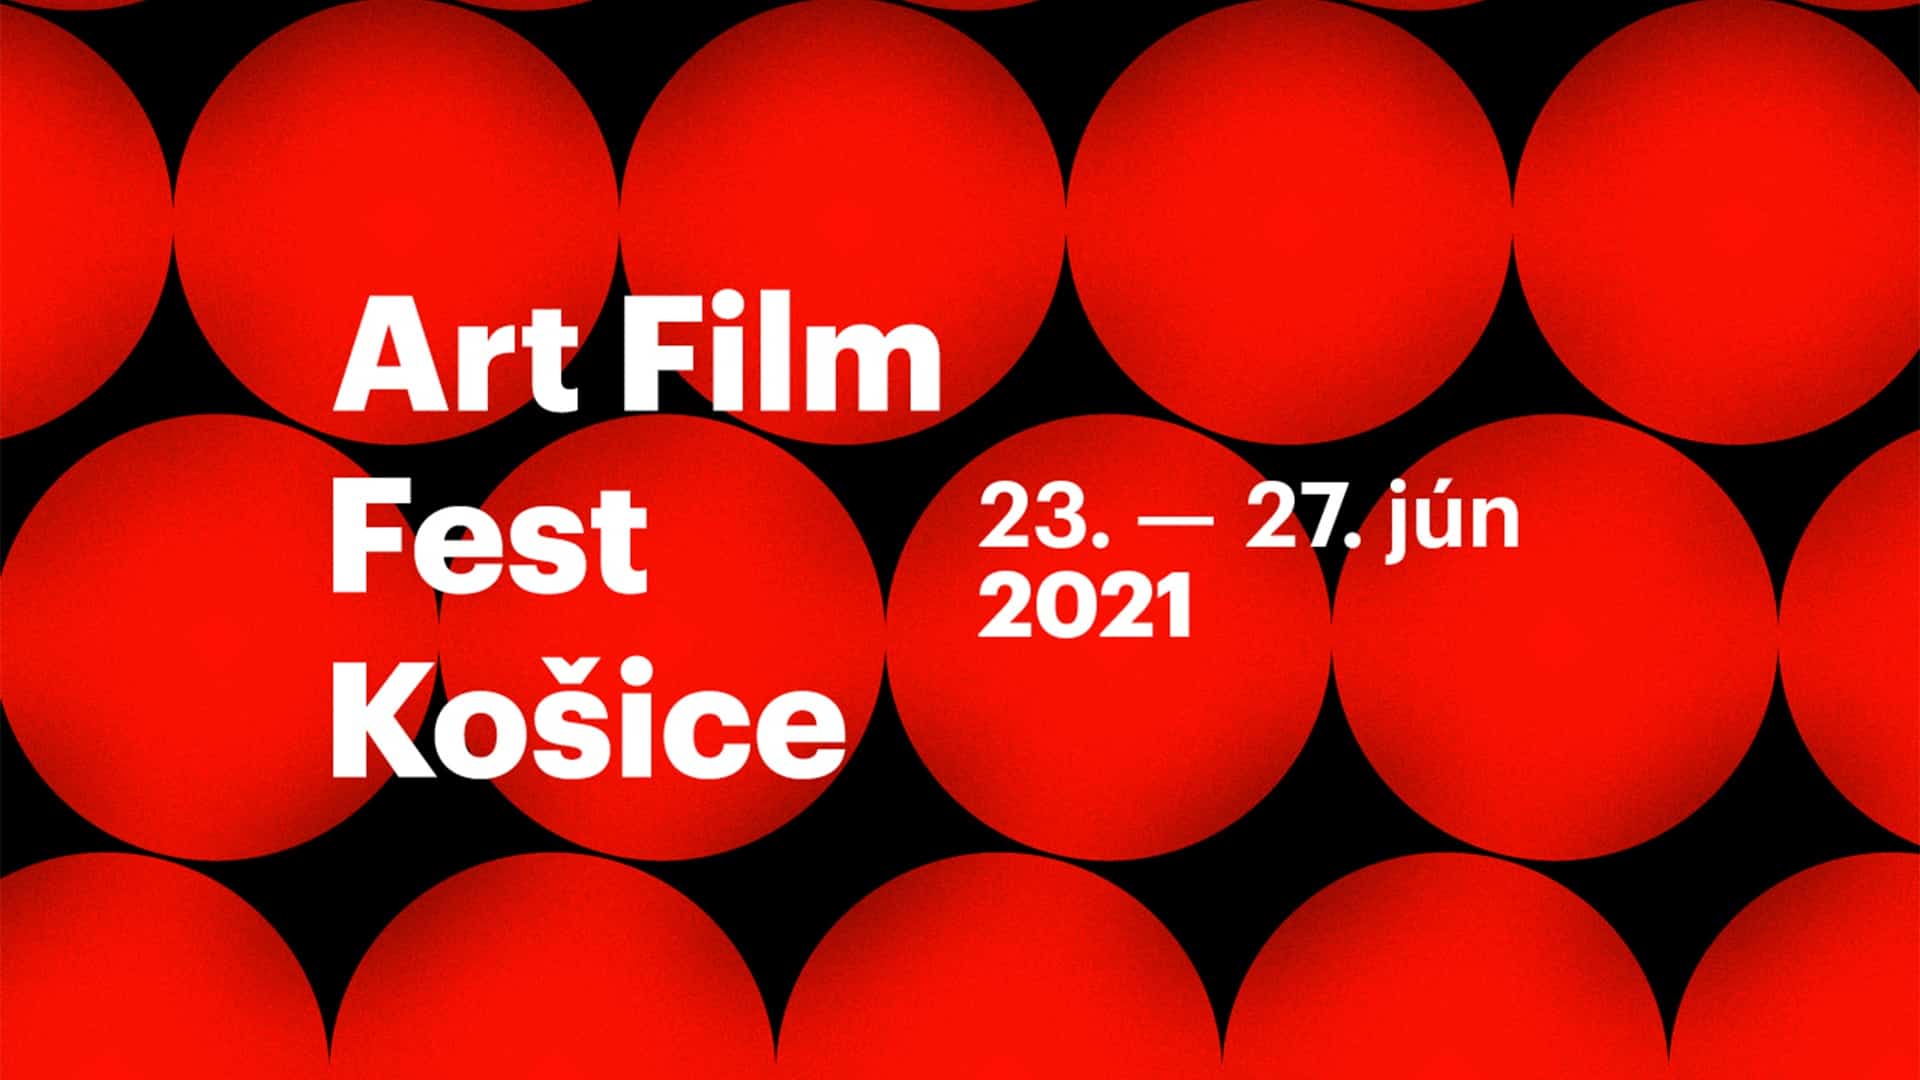 festival Art Film Fest